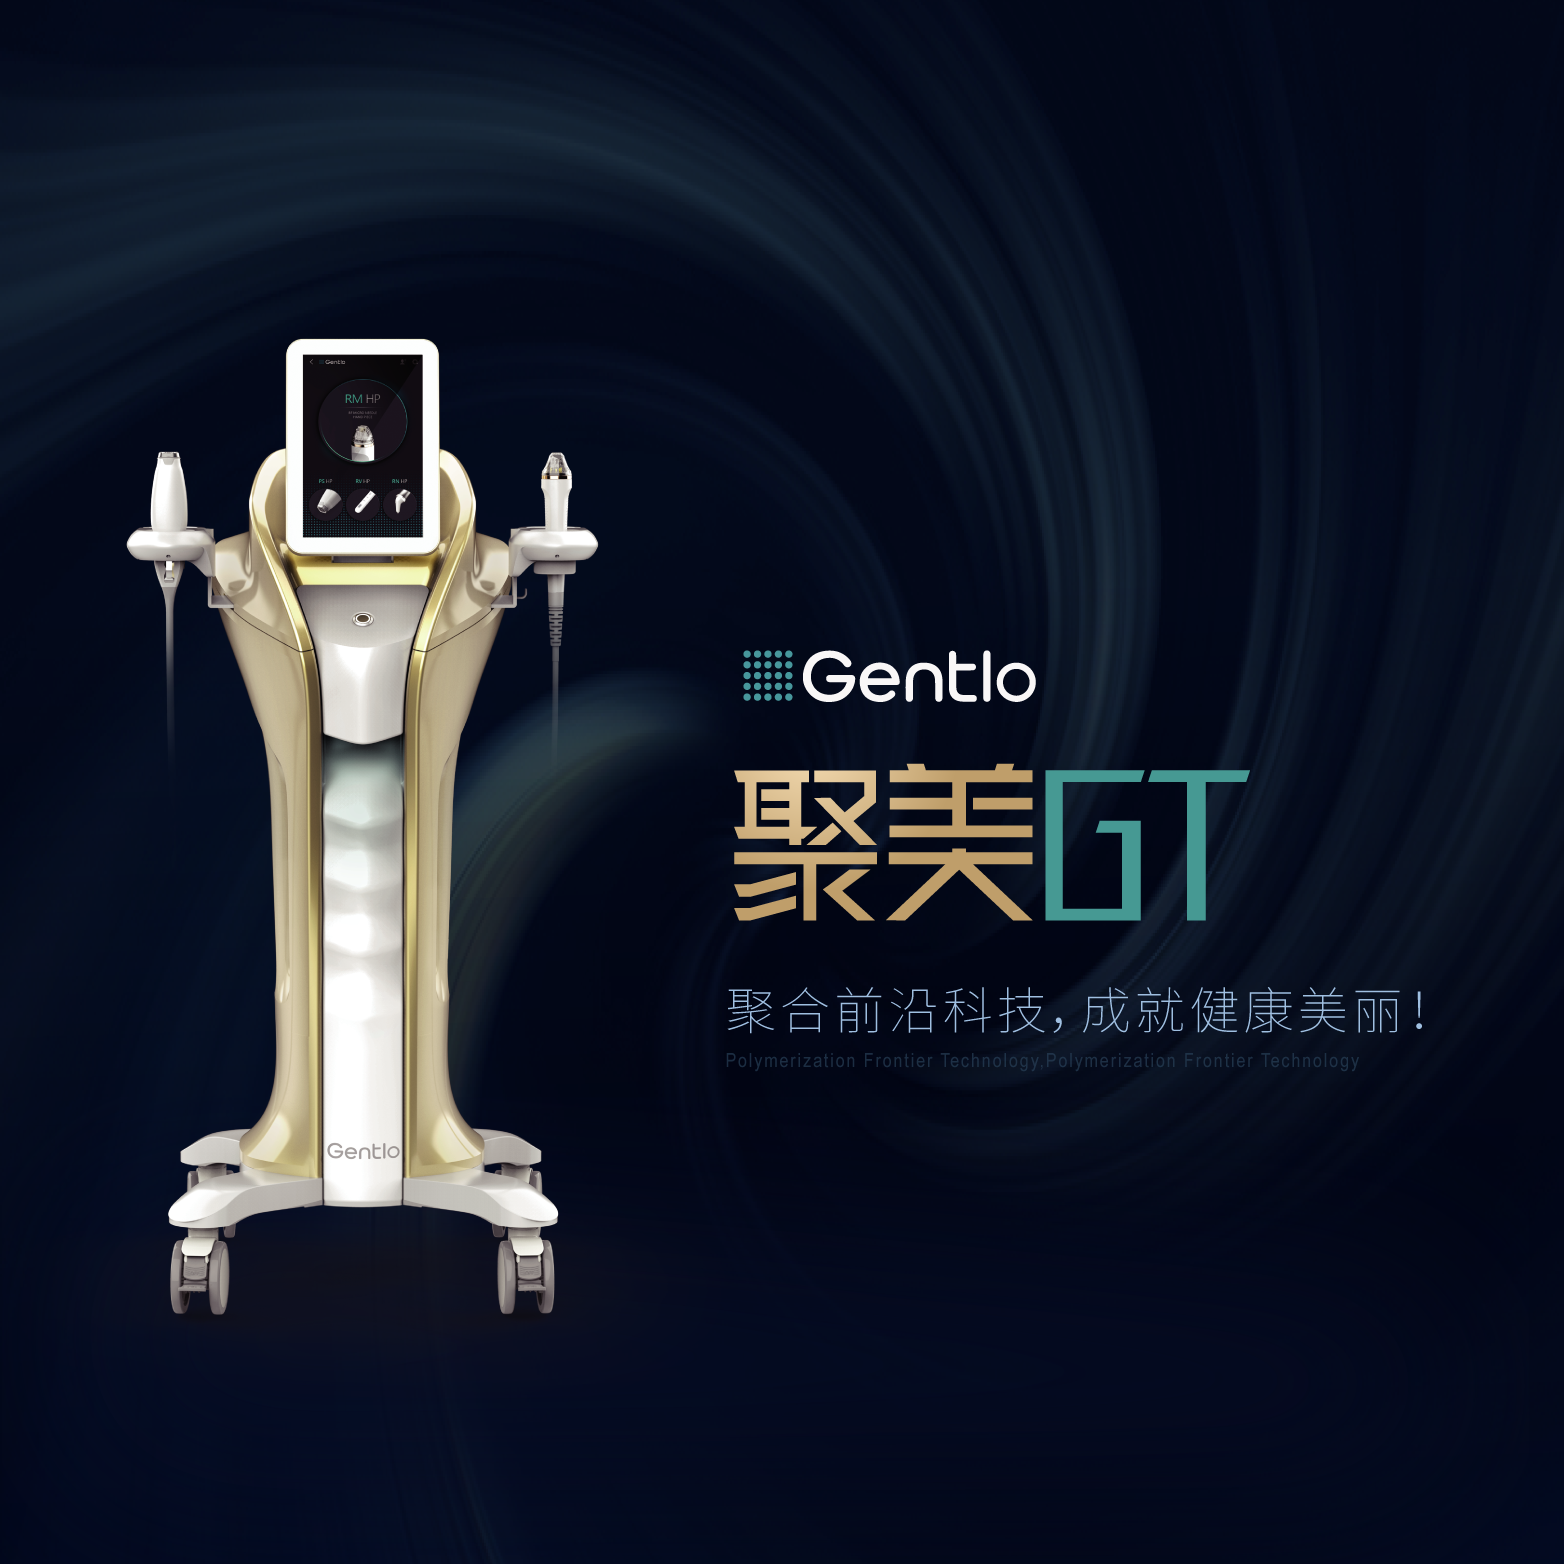 韩国聚美GT多功能美容仪结合黄金射频微针和等离子技术